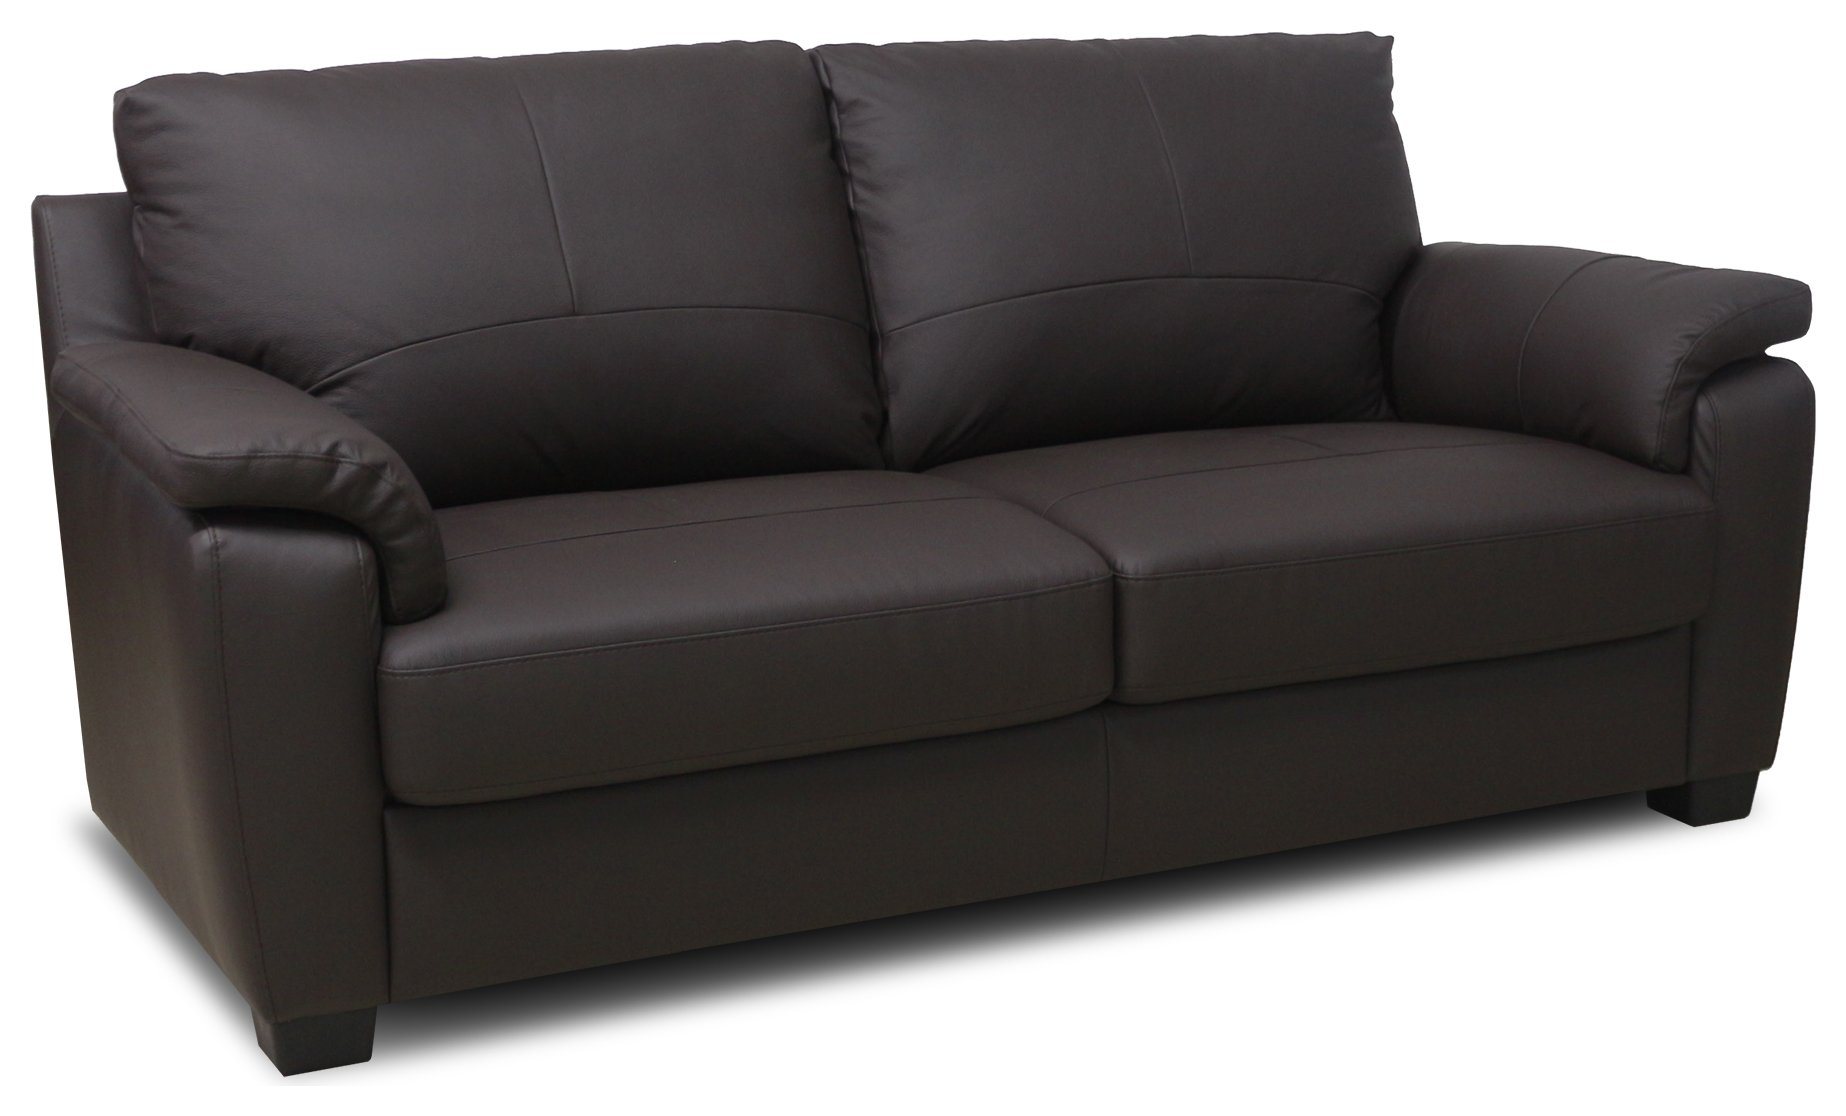 Argos Home Antonio 3 Seater - Leather Sofa Reviews